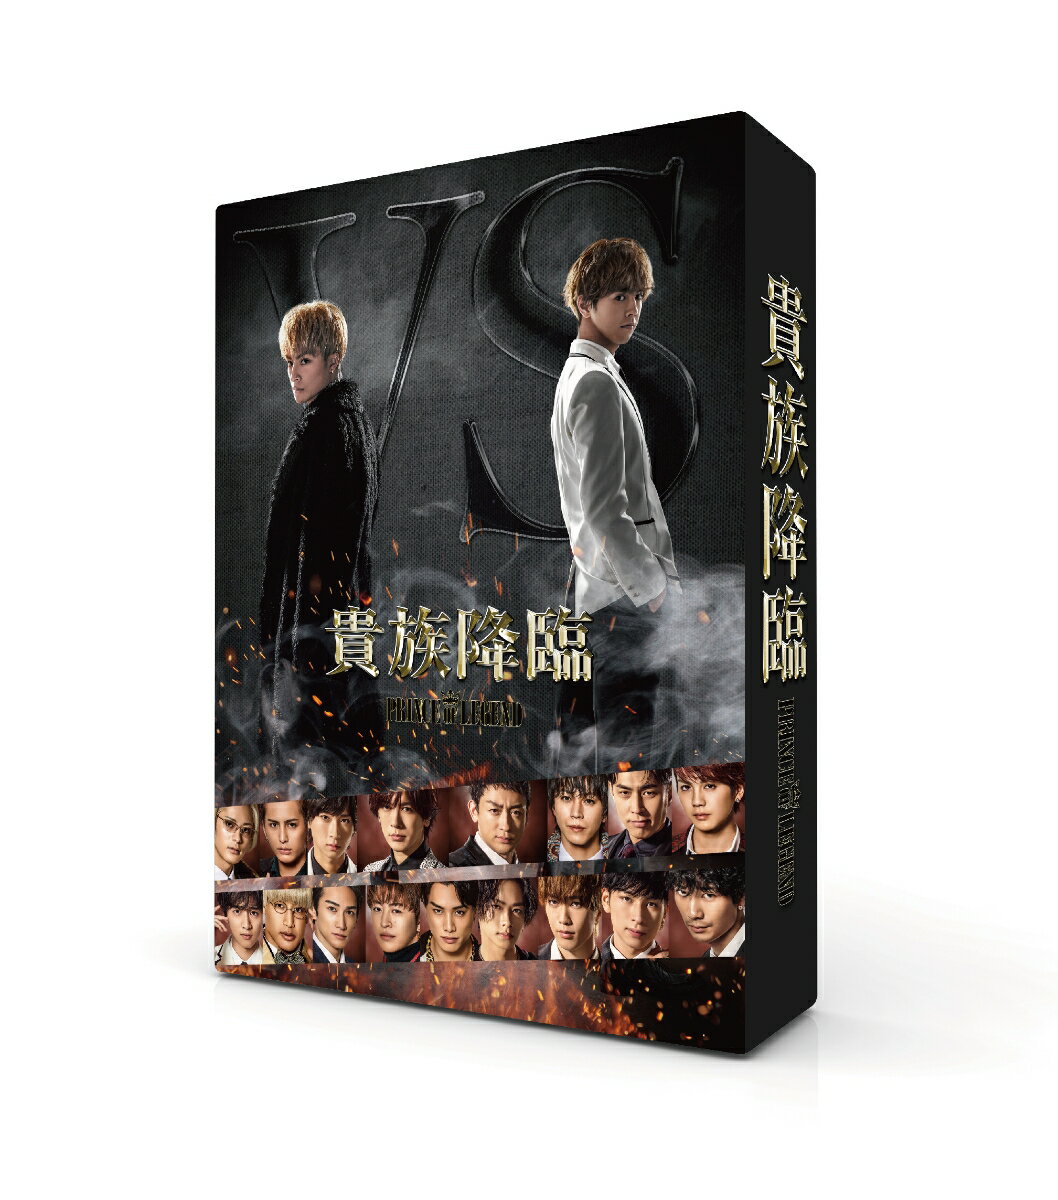 映画「貴族降臨ーPRINCE OF LEGEND-」Blu-ray豪華版【Blu-ray】